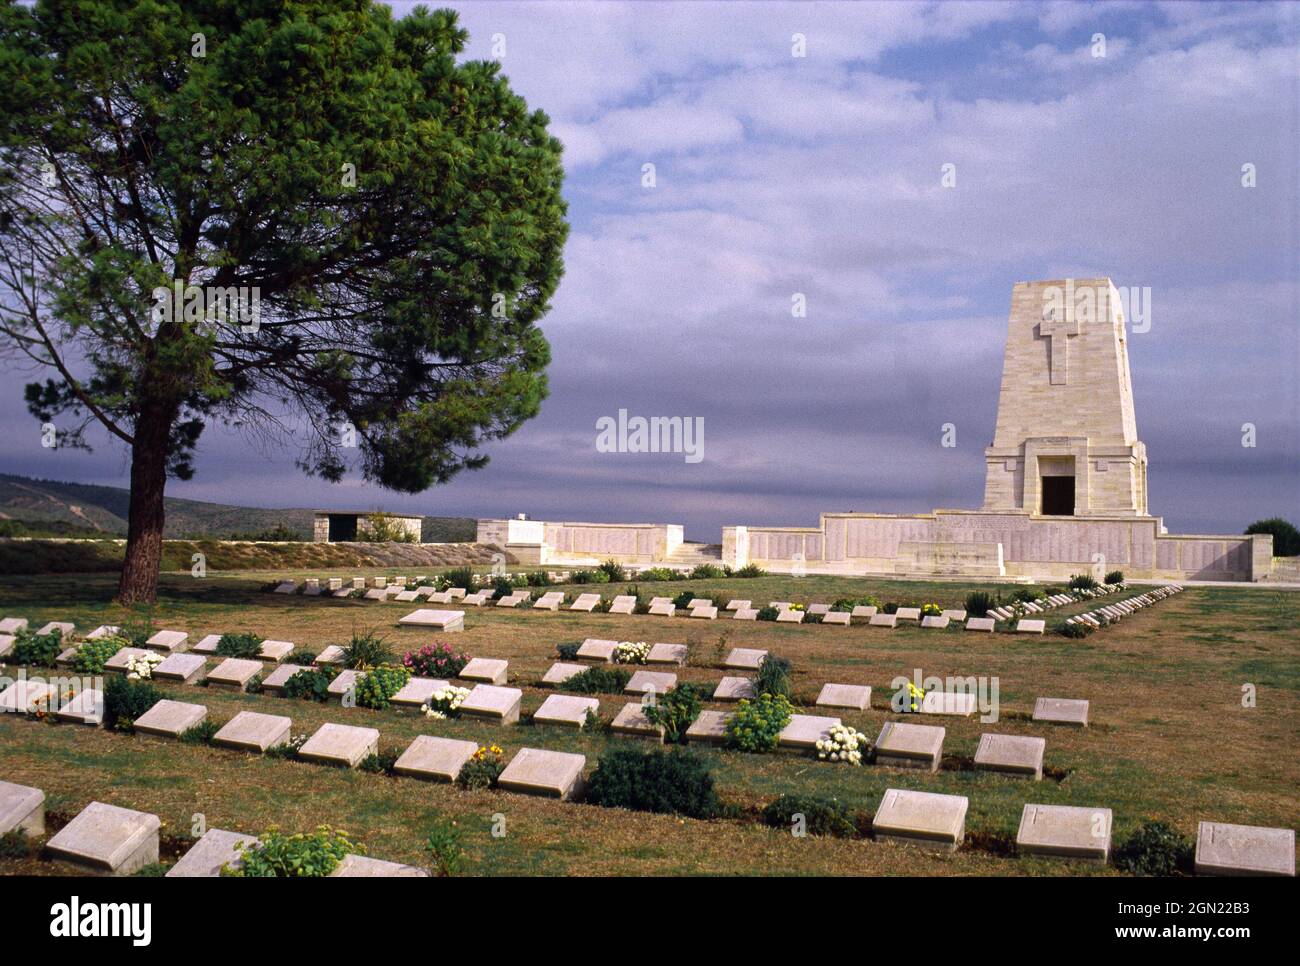 Lone Pine Cemetery and Memorial, un lieu de pèlerinage pour des milliers d'Australiens chaque année. Gallipoli, province de Canakkale, Turquie Banque D'Images